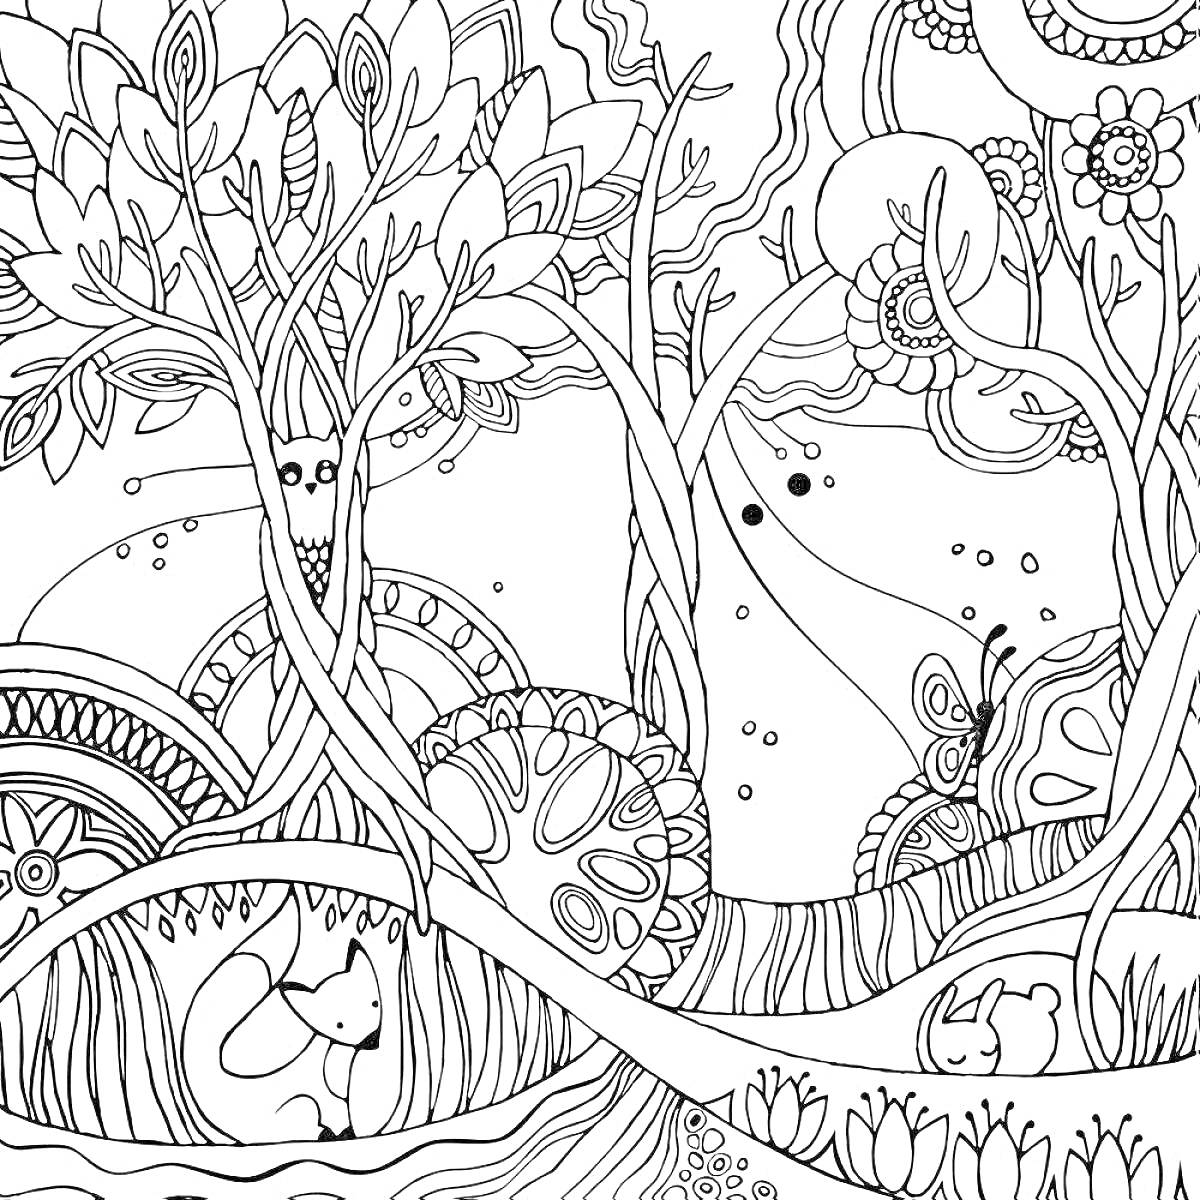 Раскраска Сказочный лес с деревьями, цветами, грибами, бабочкой и лисой